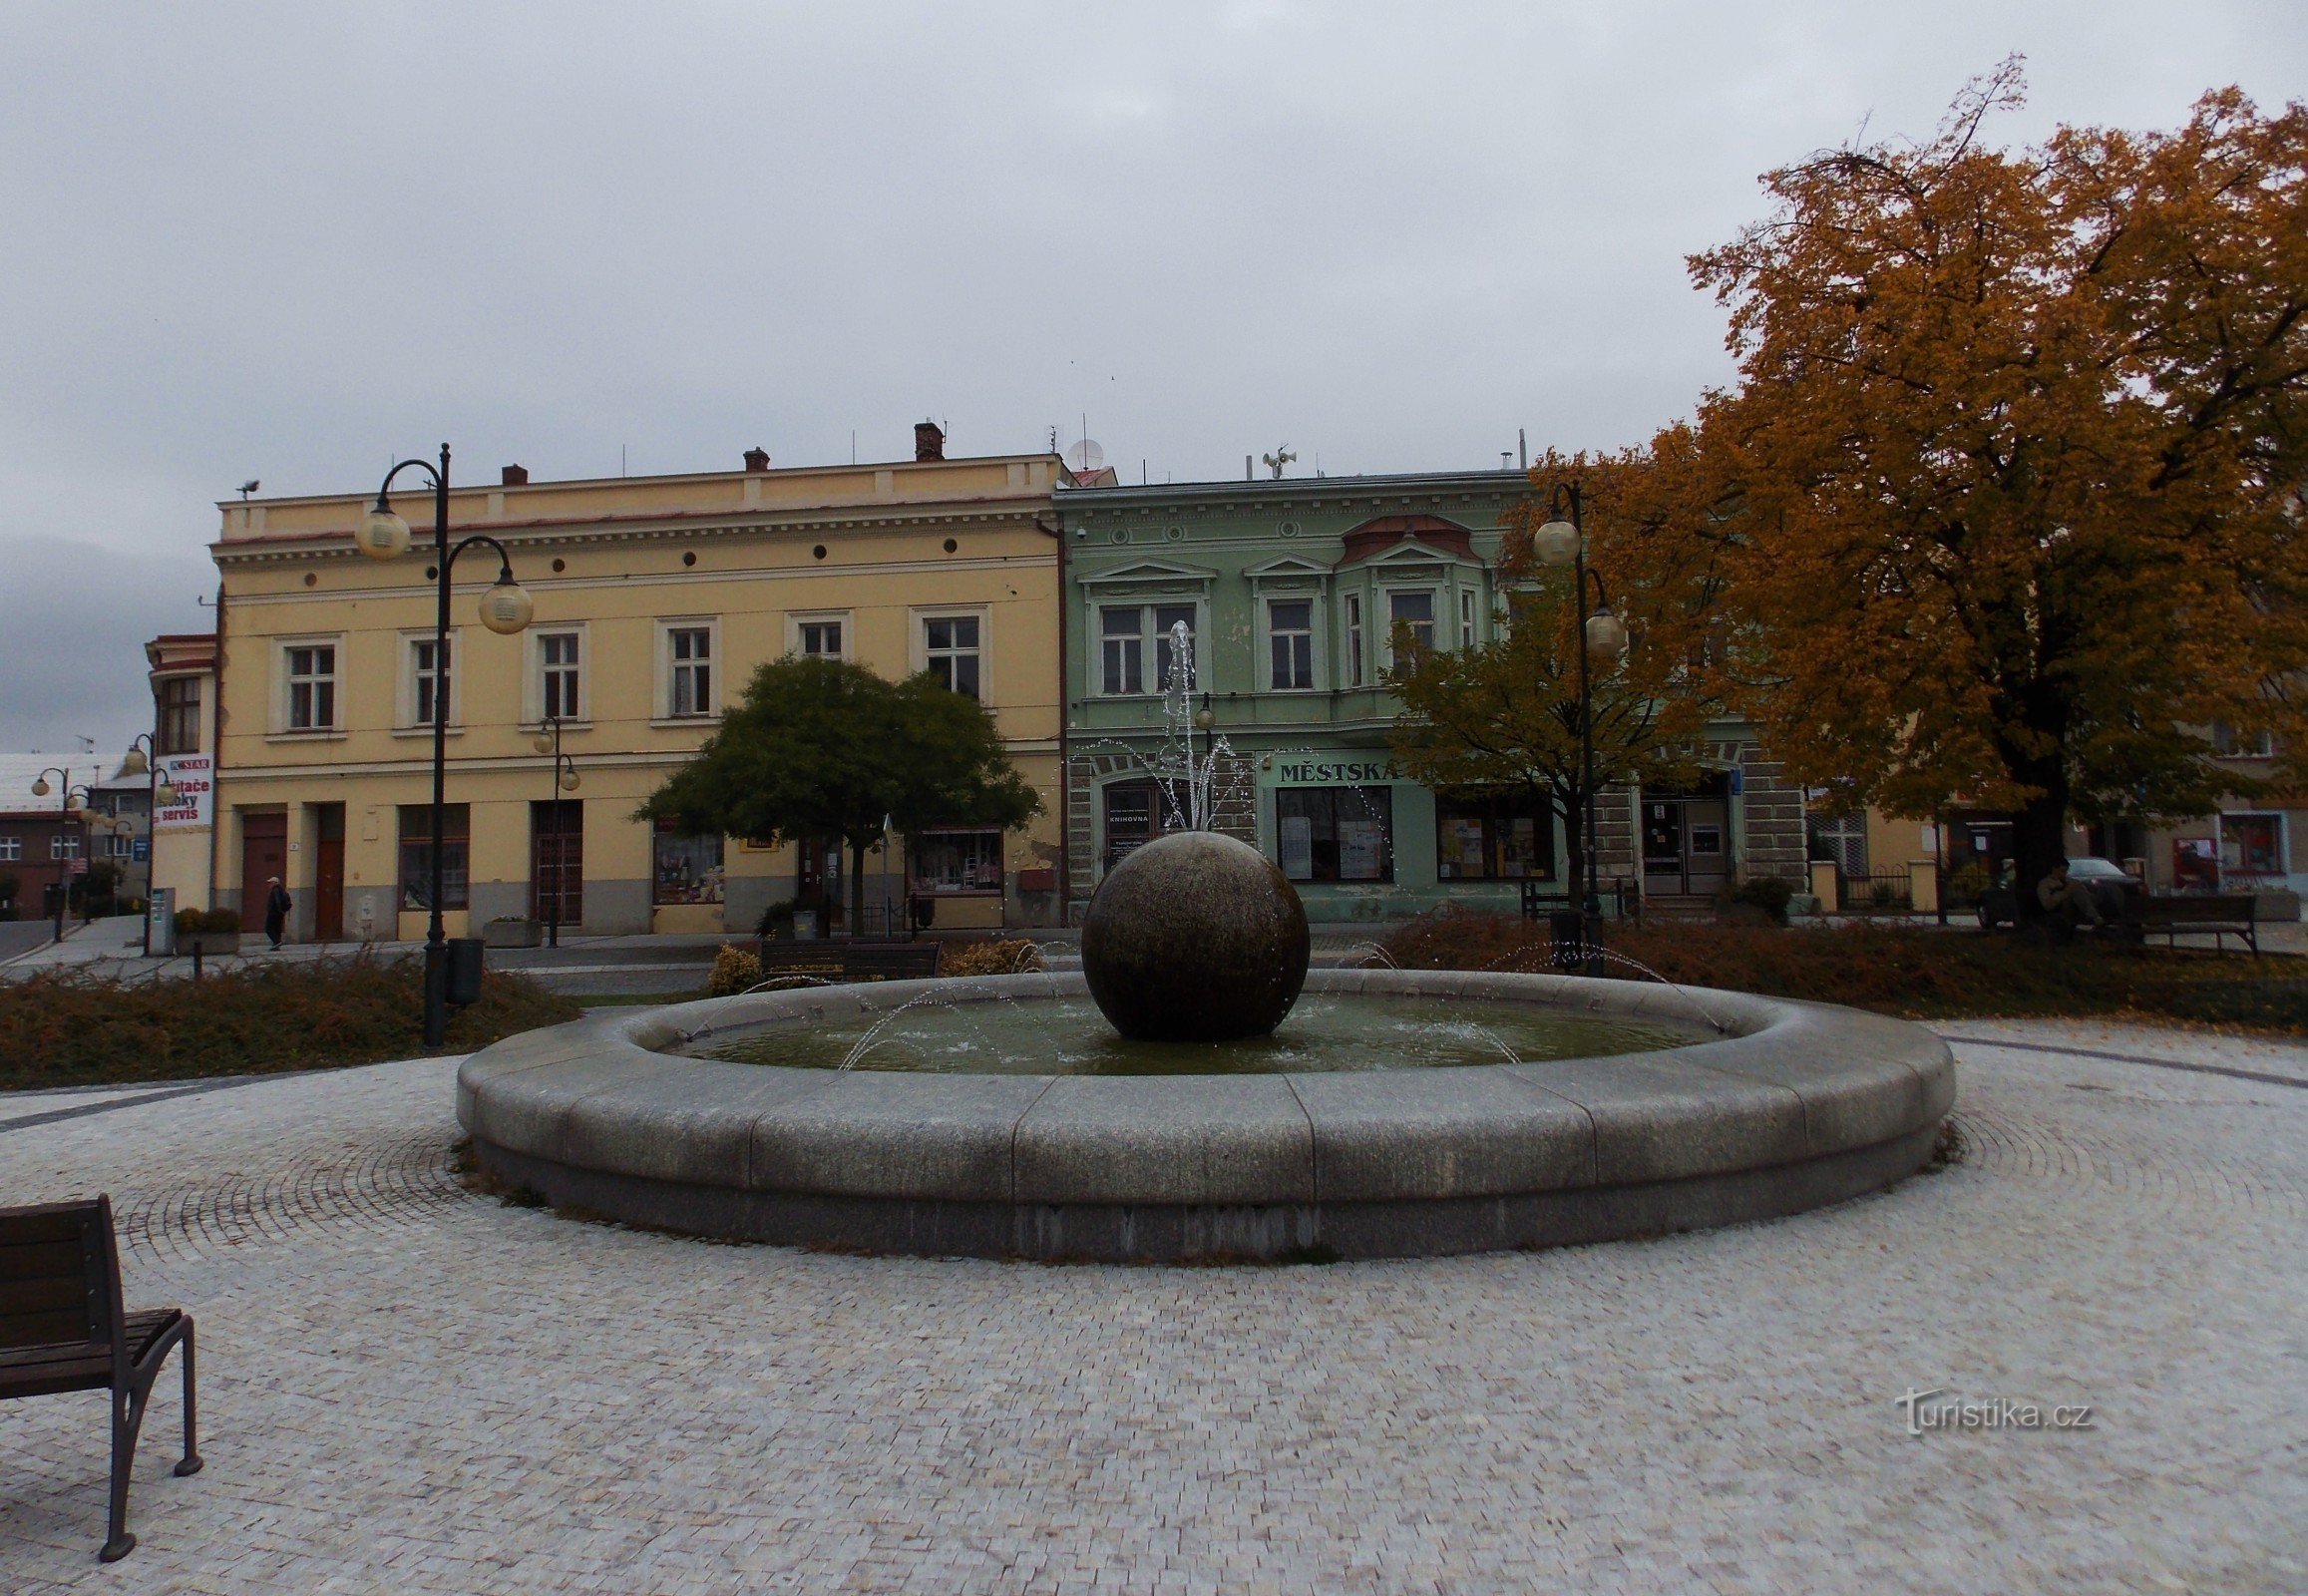 Holešovský náměstí domináns eleme a kör alakú szökőkút